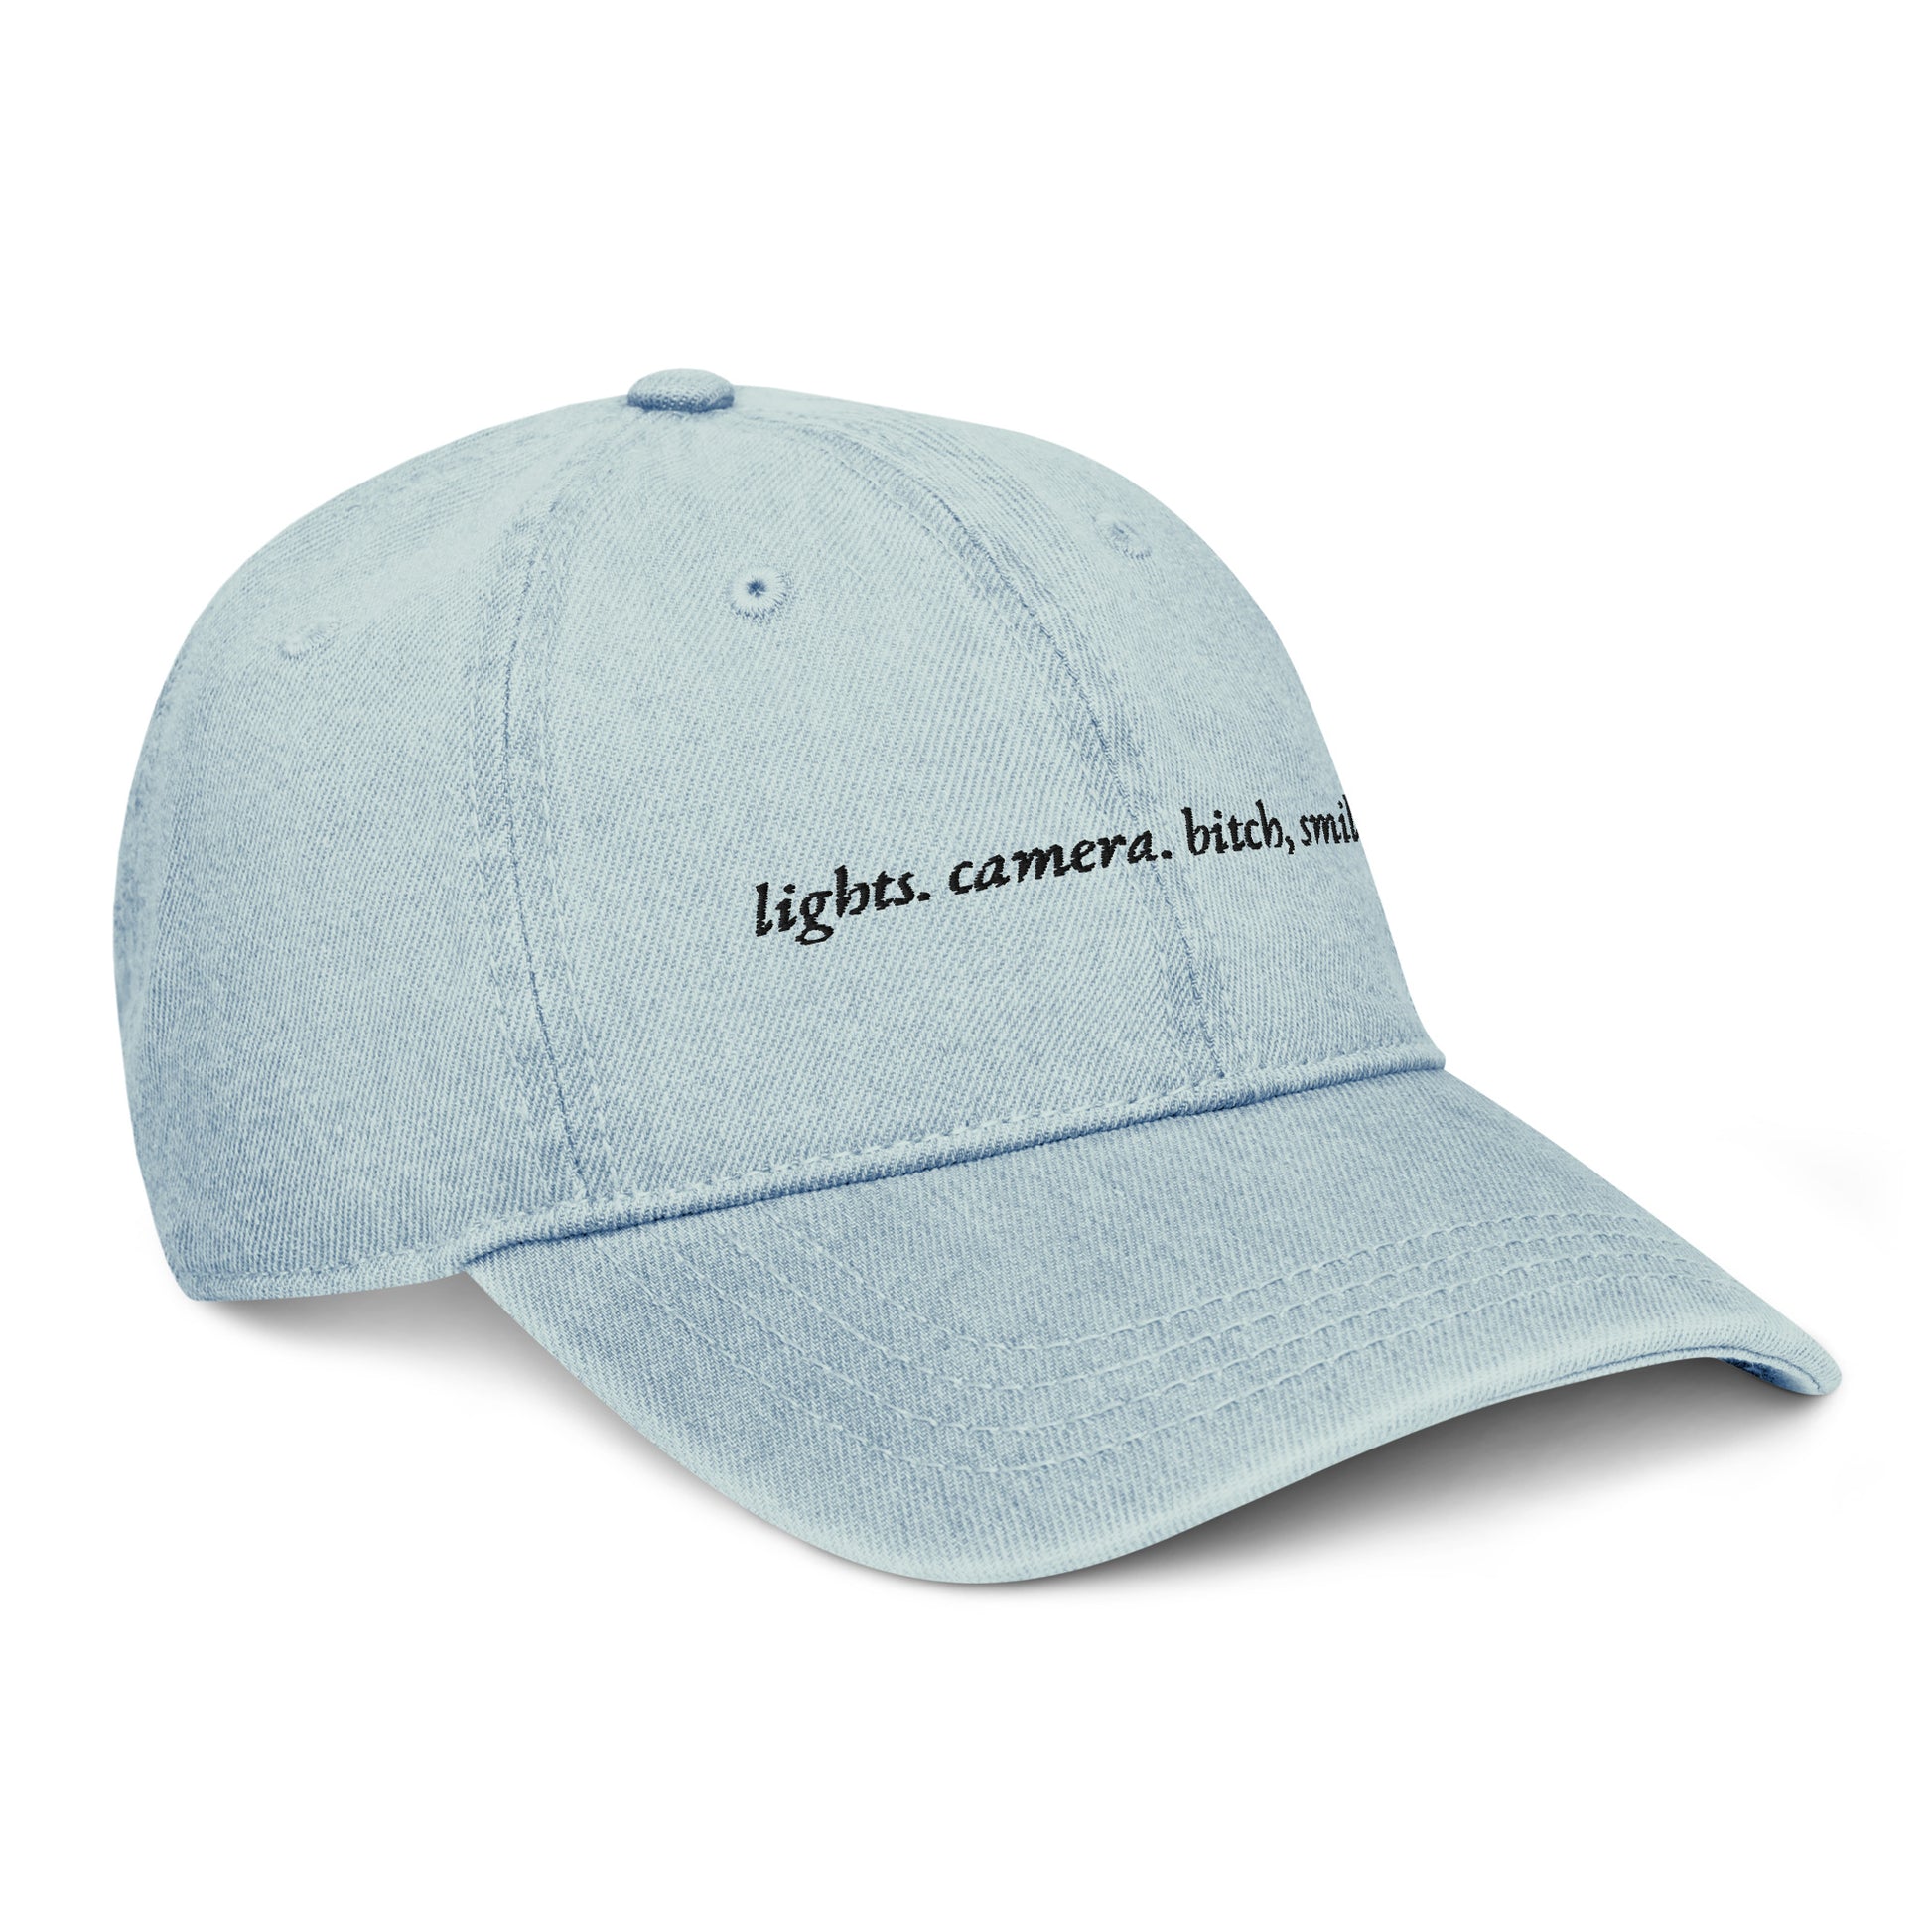 Lights, Camera, Bitch Smile. Embroidered Denim Hat